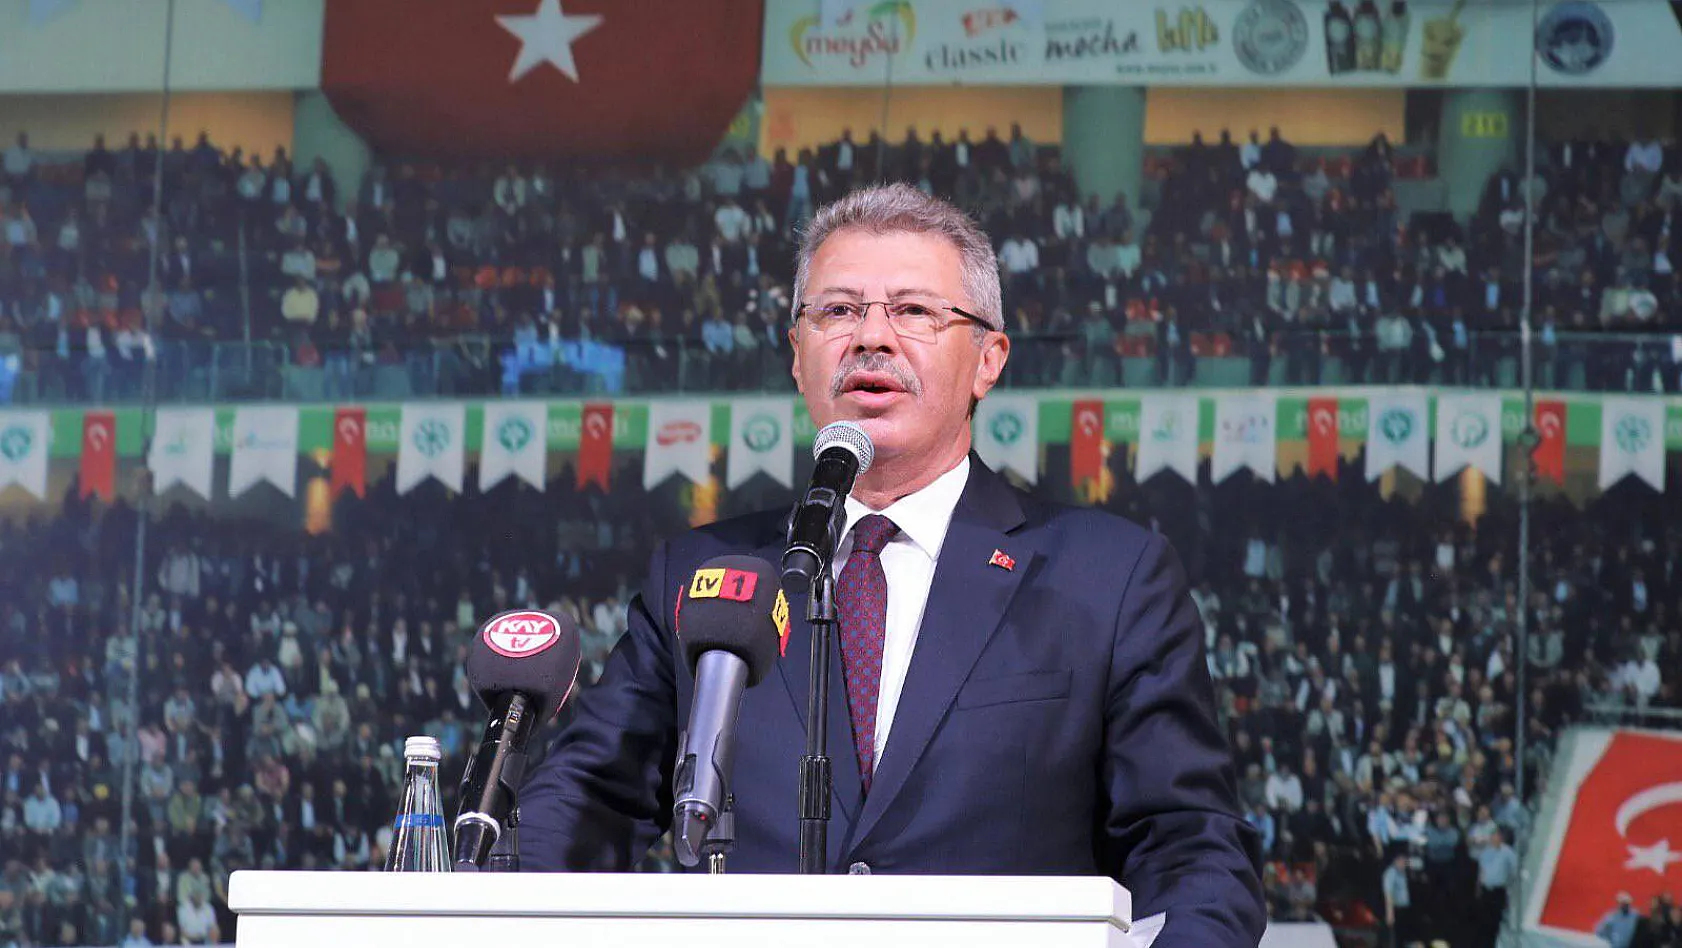 Kayseri Pancar Kooperatifinden genel kurul yaptı! Başkan Akay helallik istedi